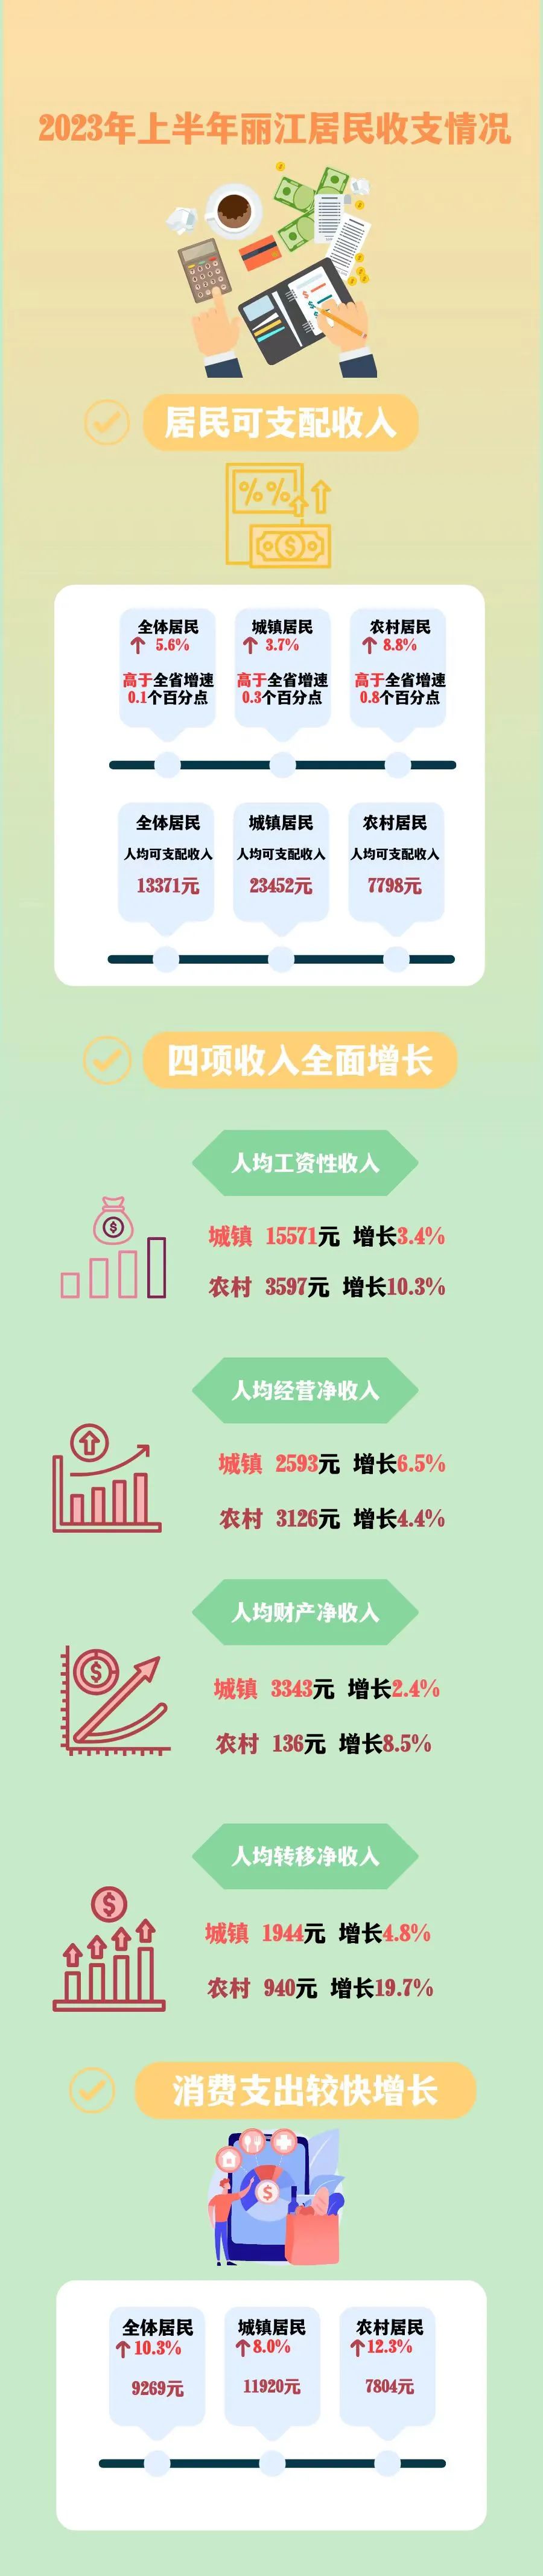 2023上半年丽江居民人均可支配收入13371元   你达标了吗？.jpg